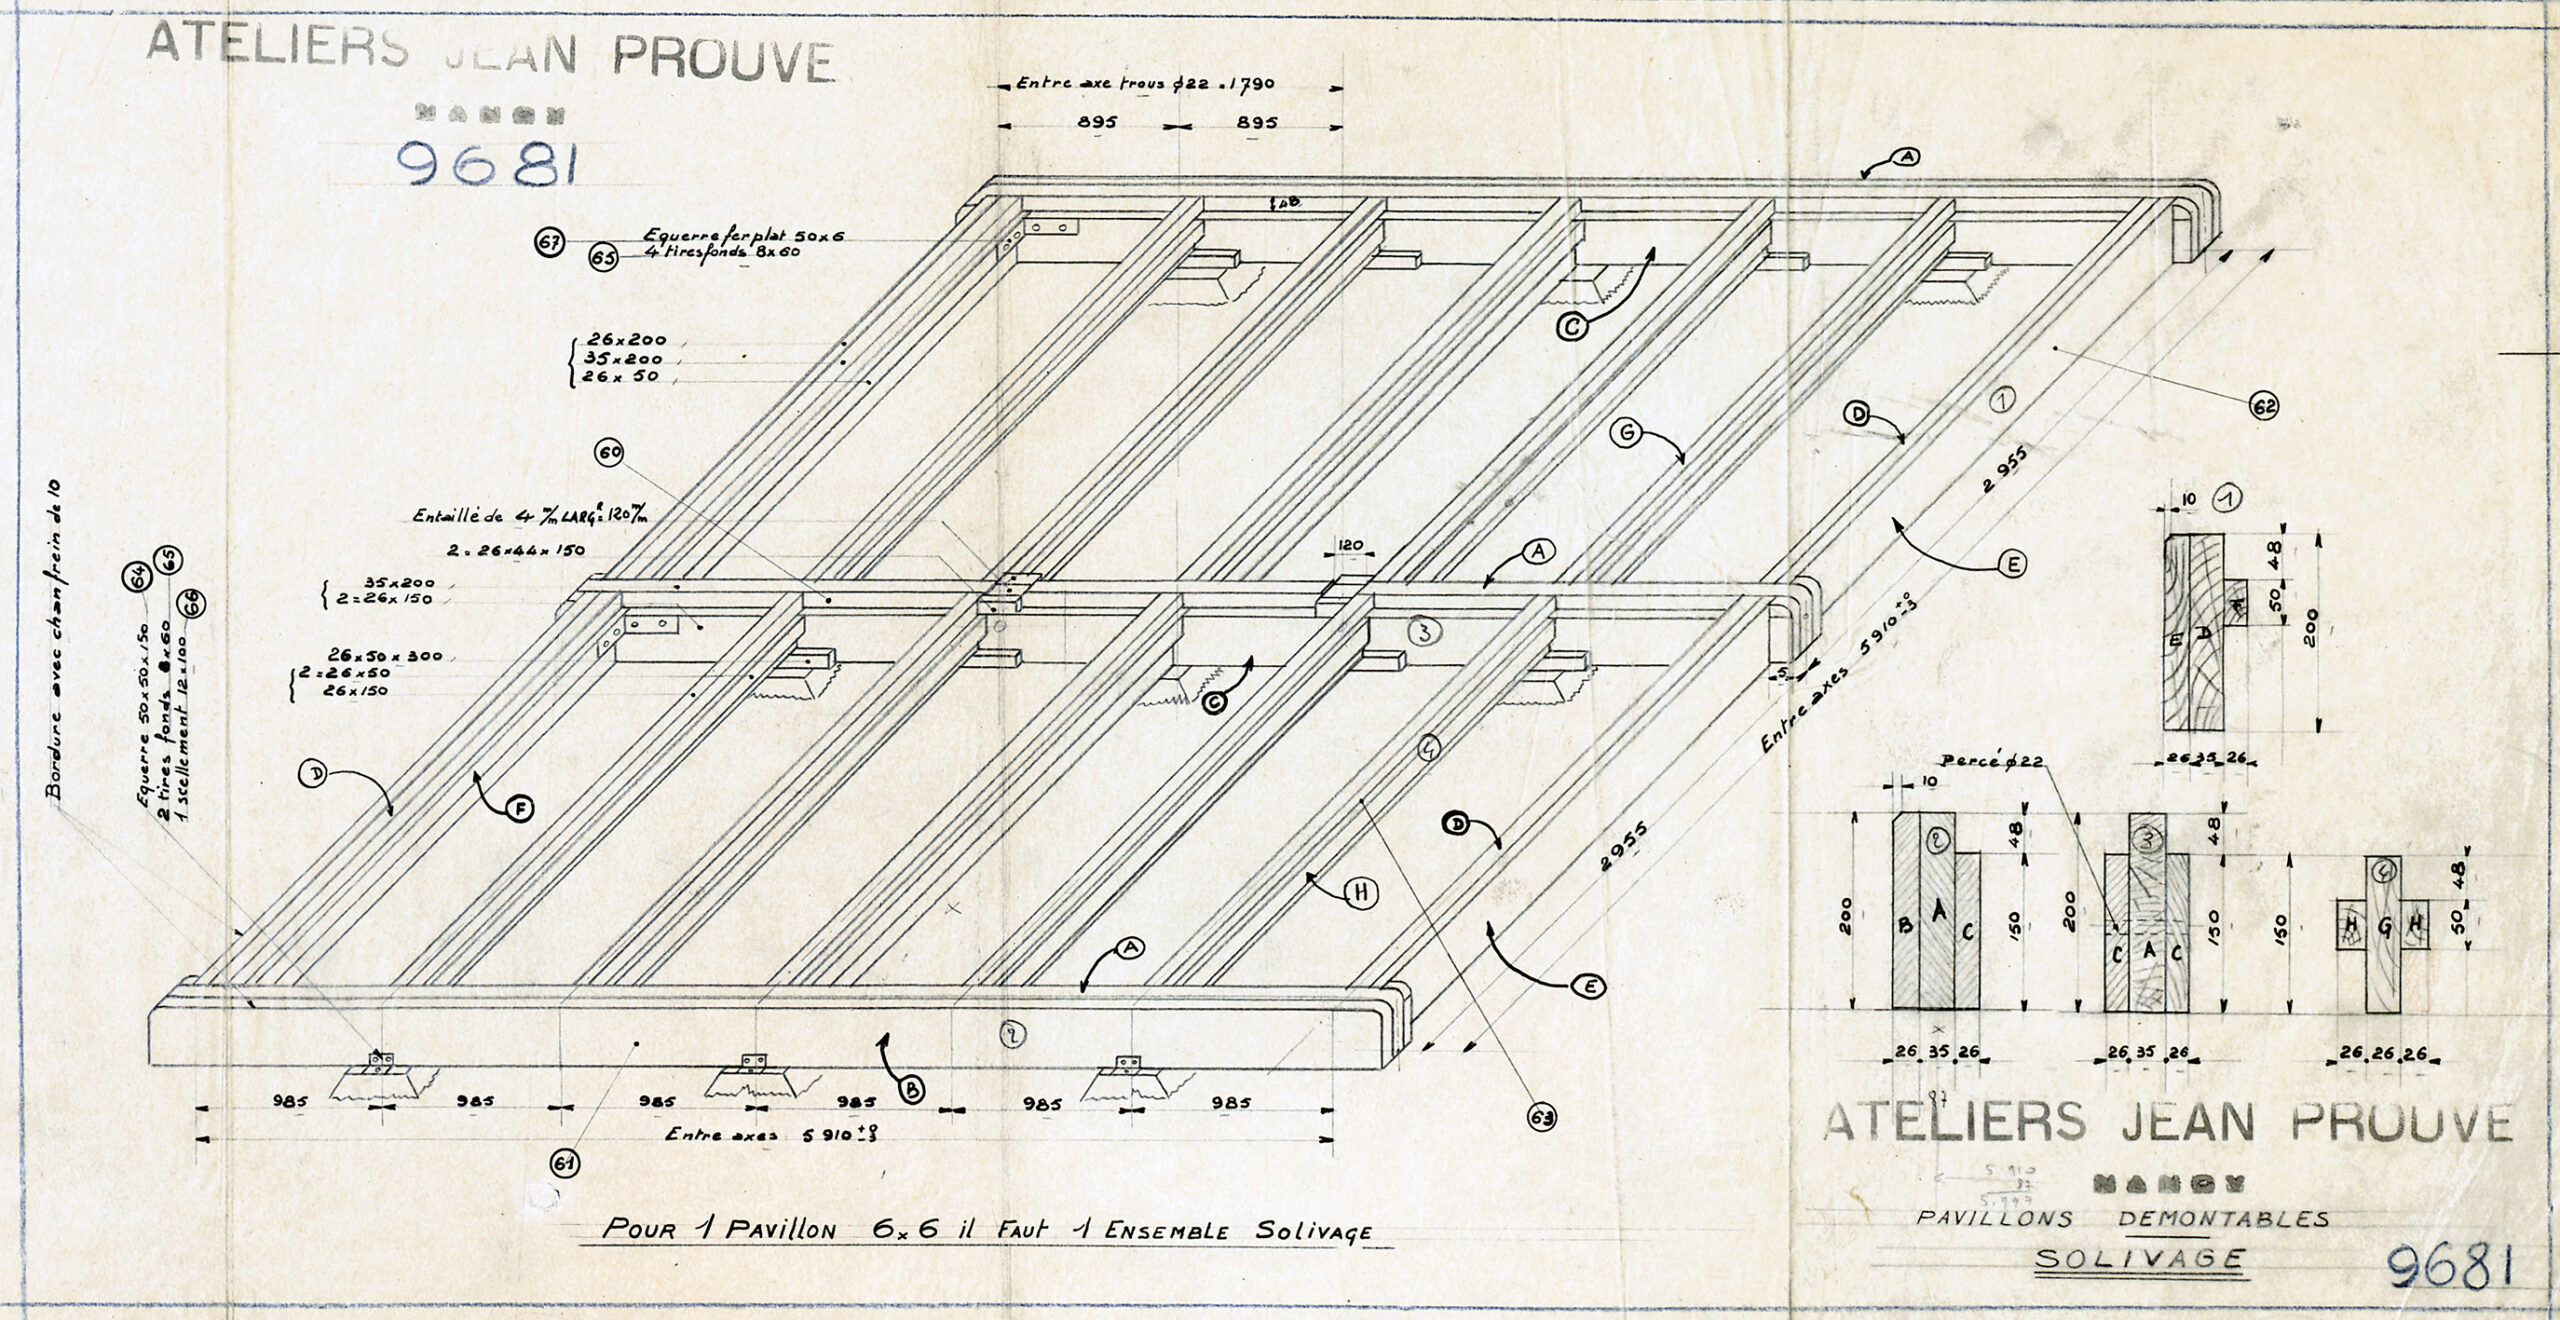 Ateliers Jean Prouvé. « Pavillons démontables, solivage », plan n° 9681, 10 mai 1945.